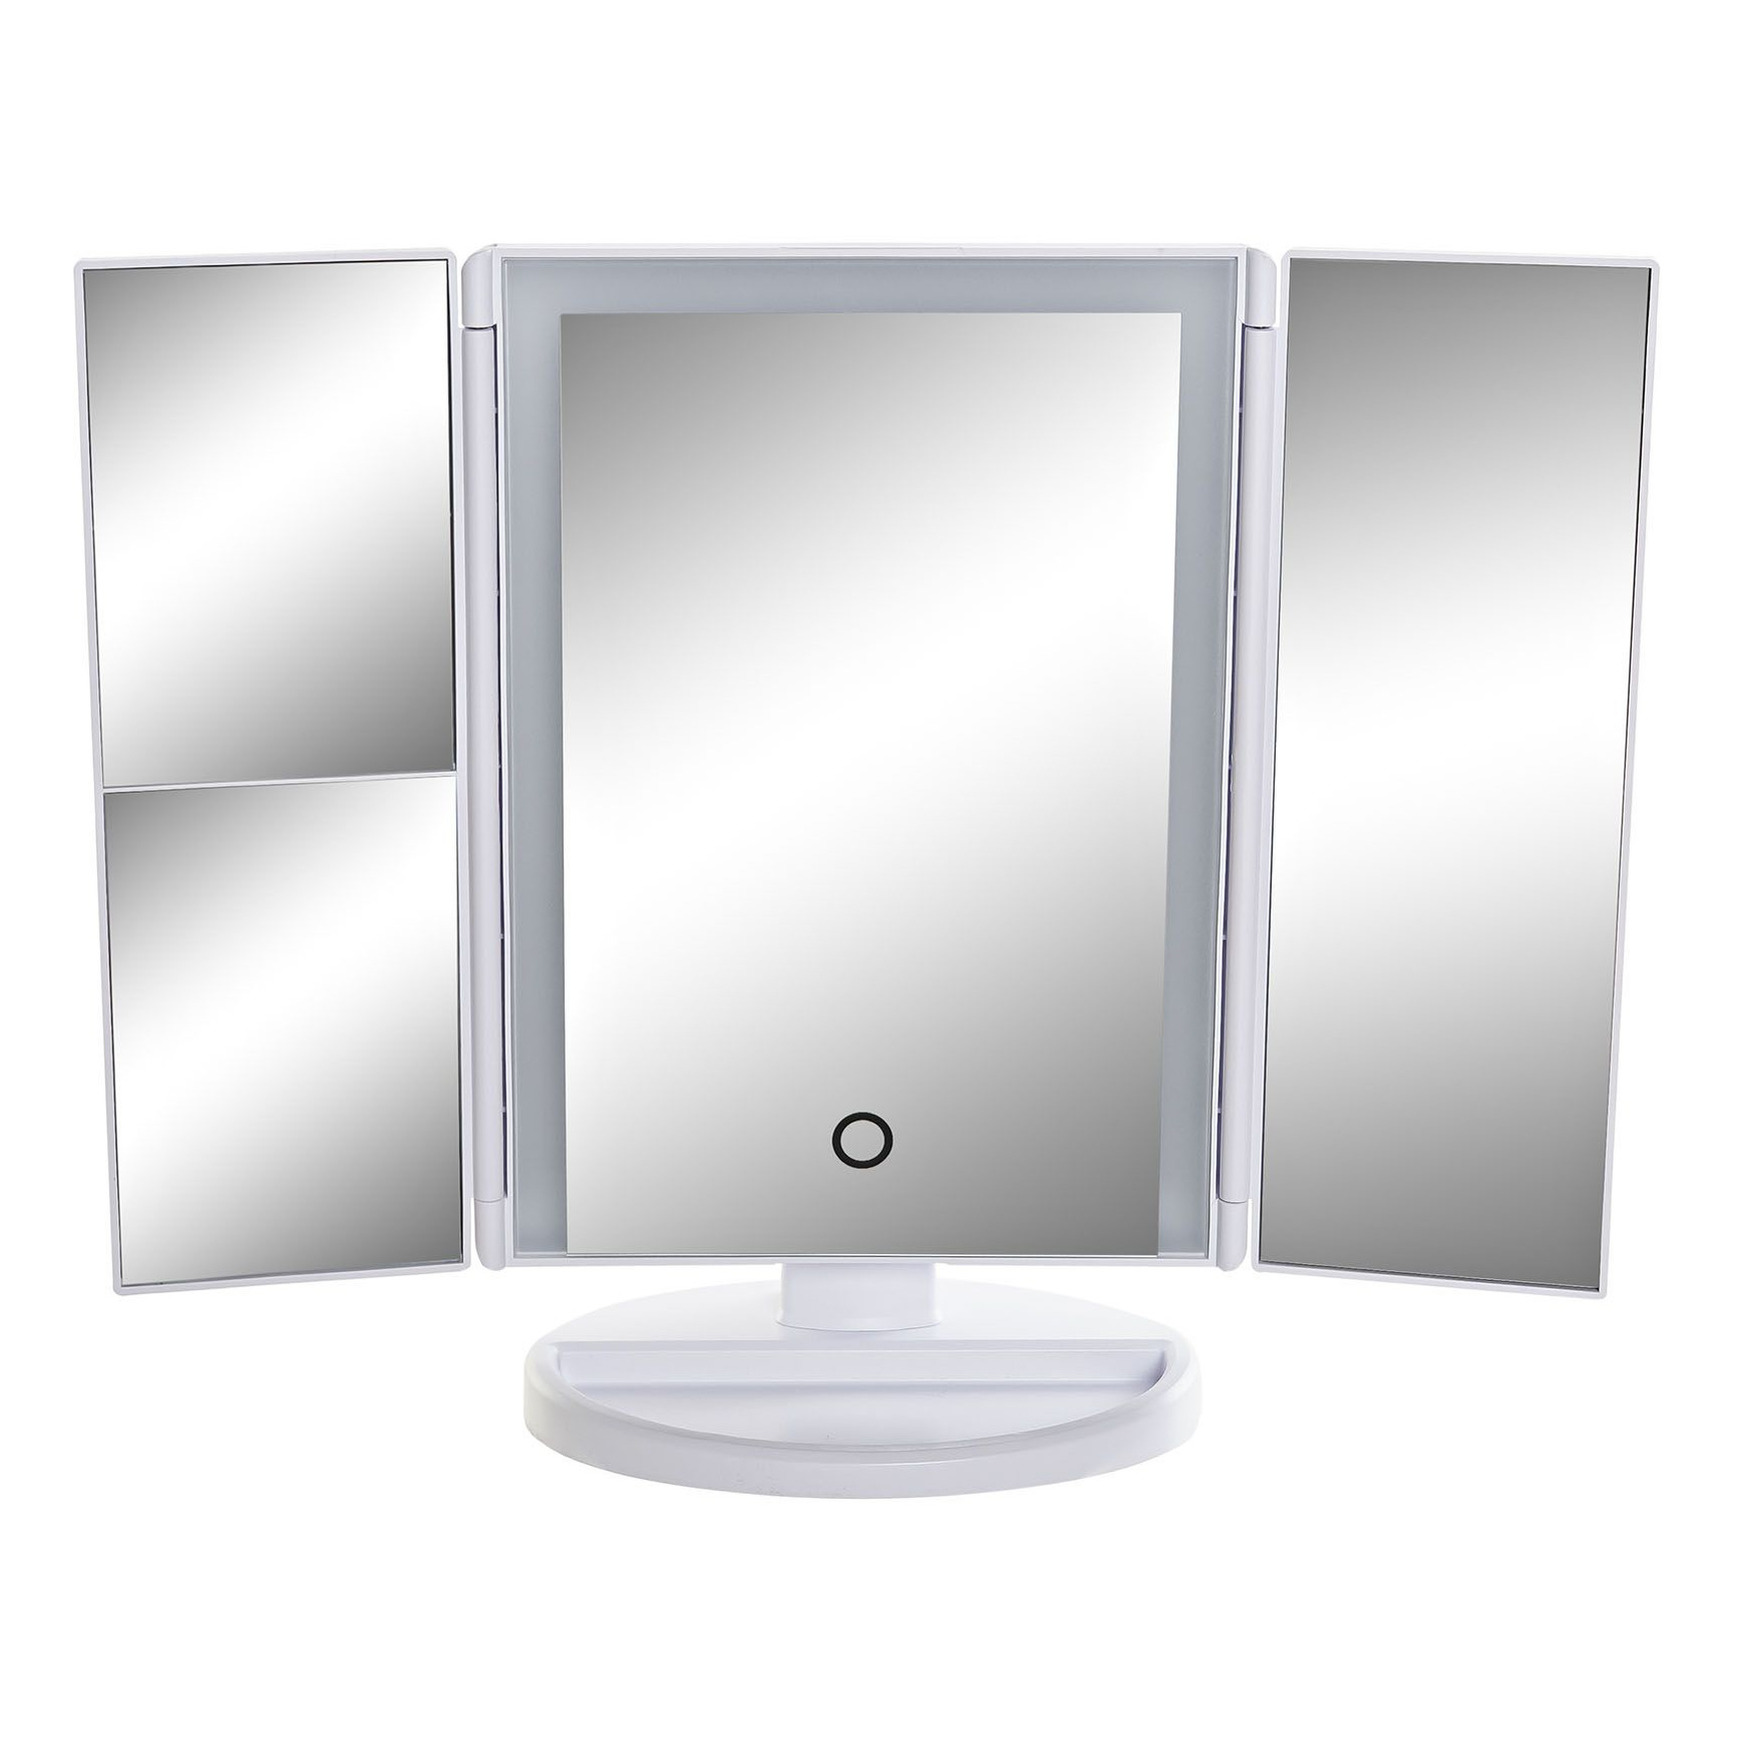 Badkamerspiegel-make-up spiegel met LED verlichting 34 x 11 x 28